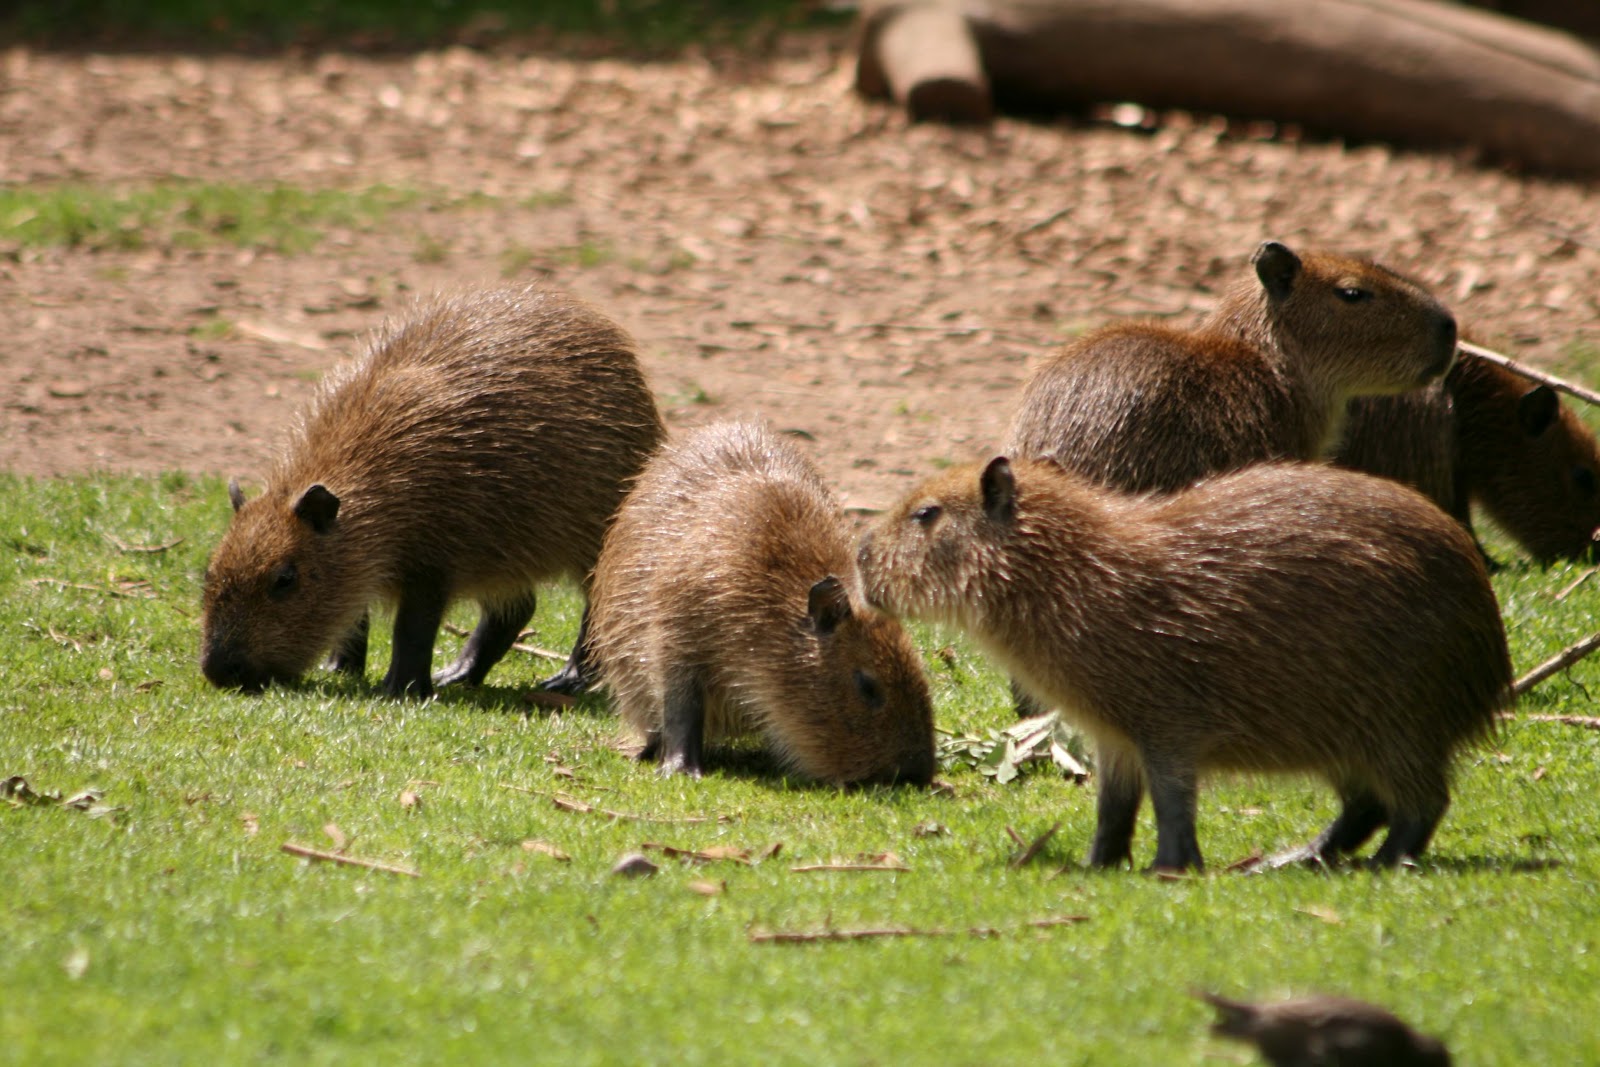 ICapybaras